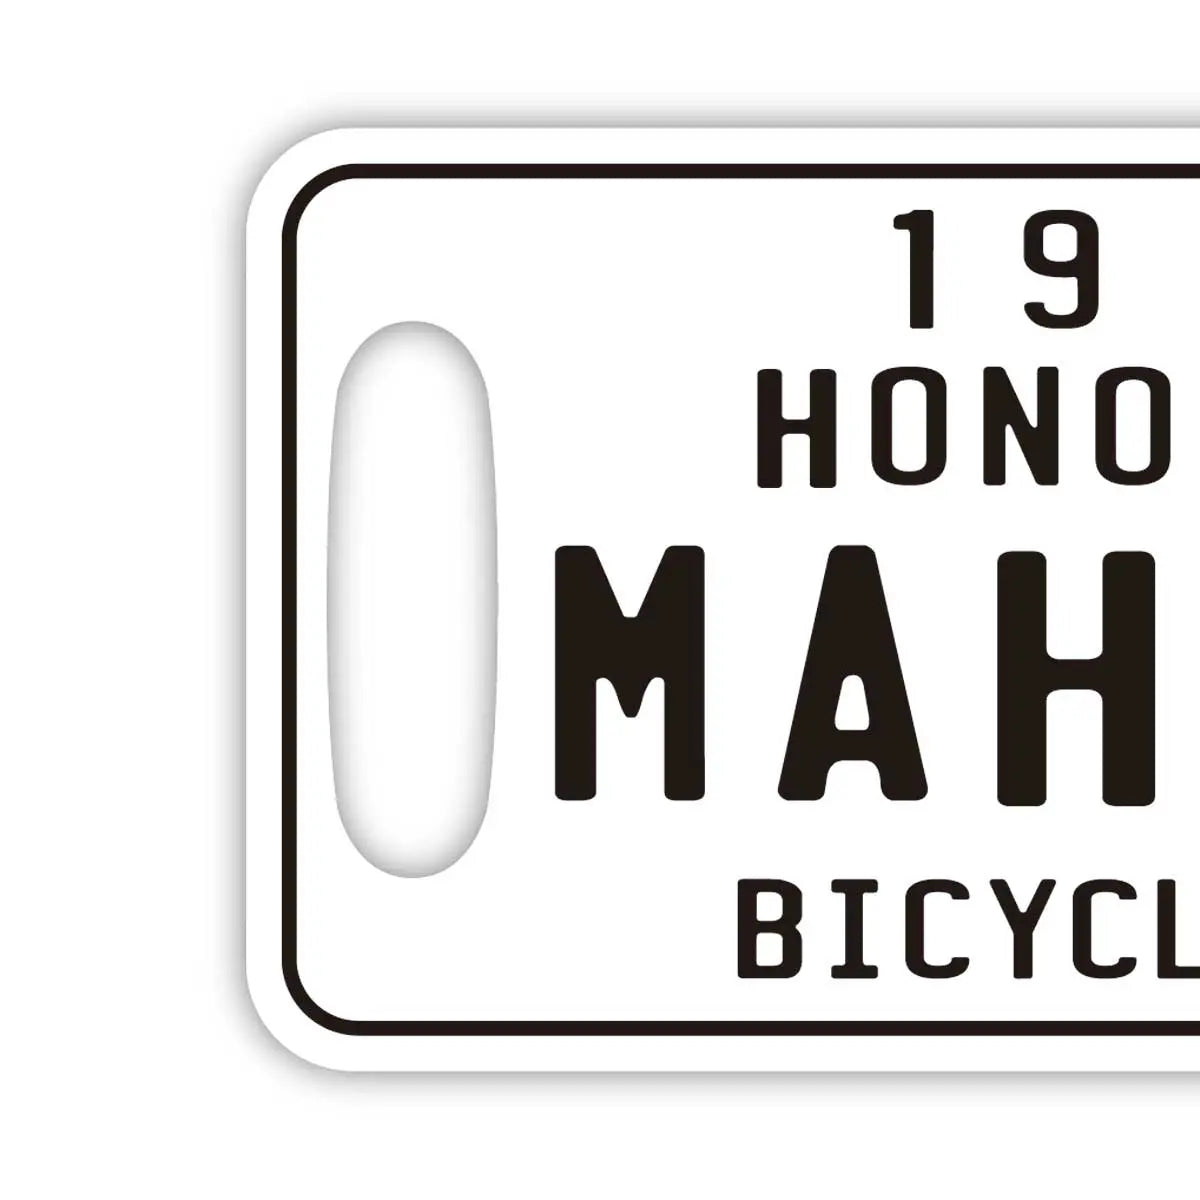 【ラゲッジタグ】ハワイ自転車タグ風・ホワイト/オリジナルアメリカナンバープレート型・おしゃれ ・紛失防止タグ PL8HERO